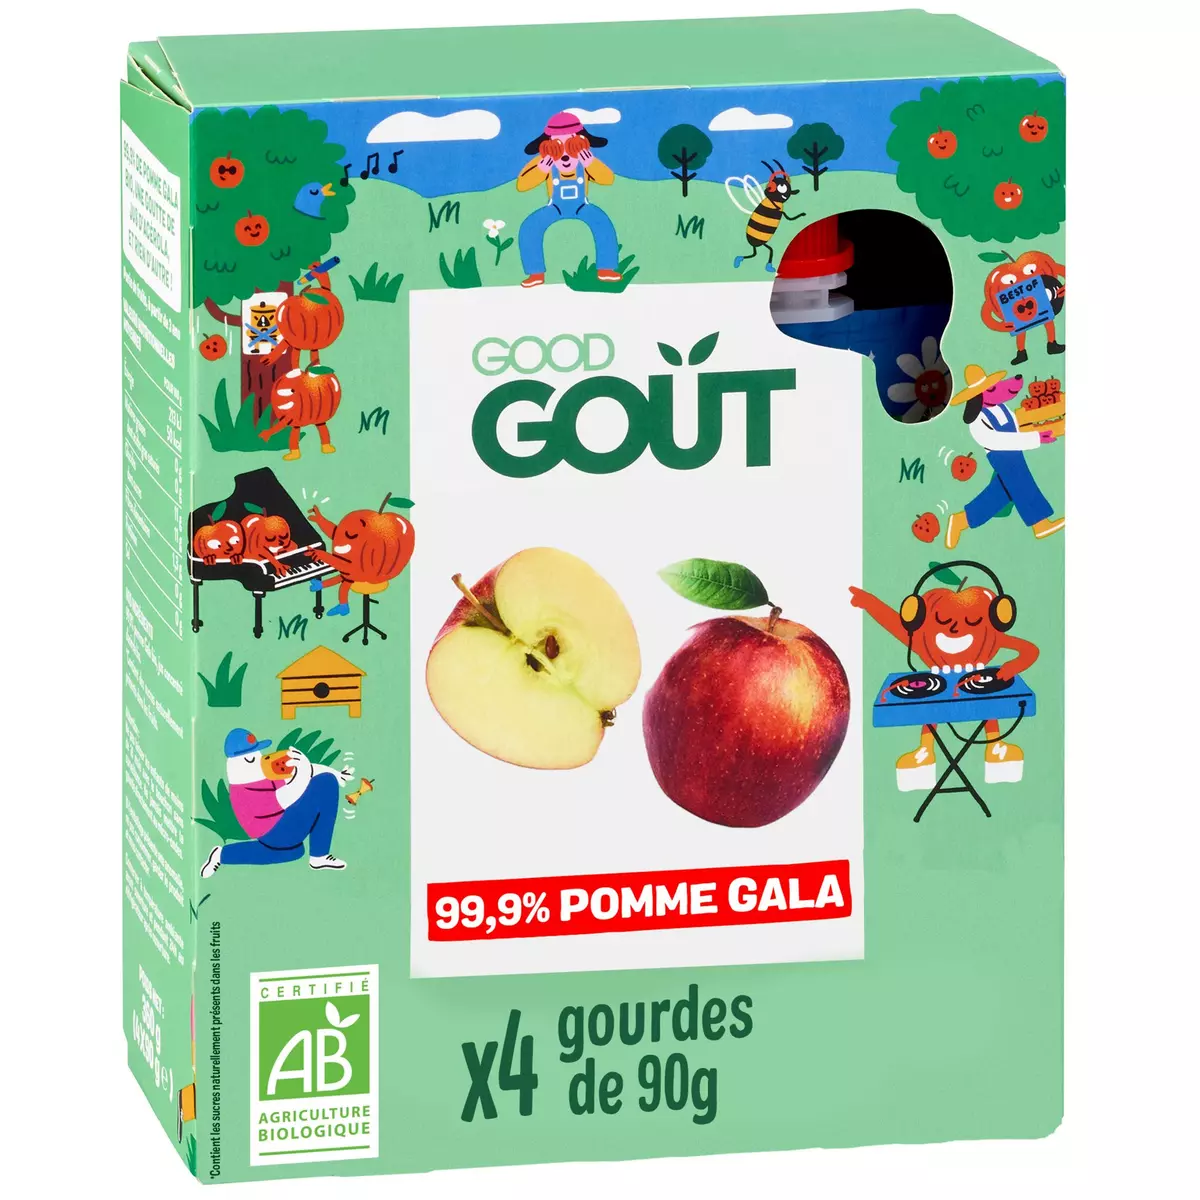 GOOD GOUT Kidz gourdes bio pomme Gala sans sucres ajoutés 4x90g